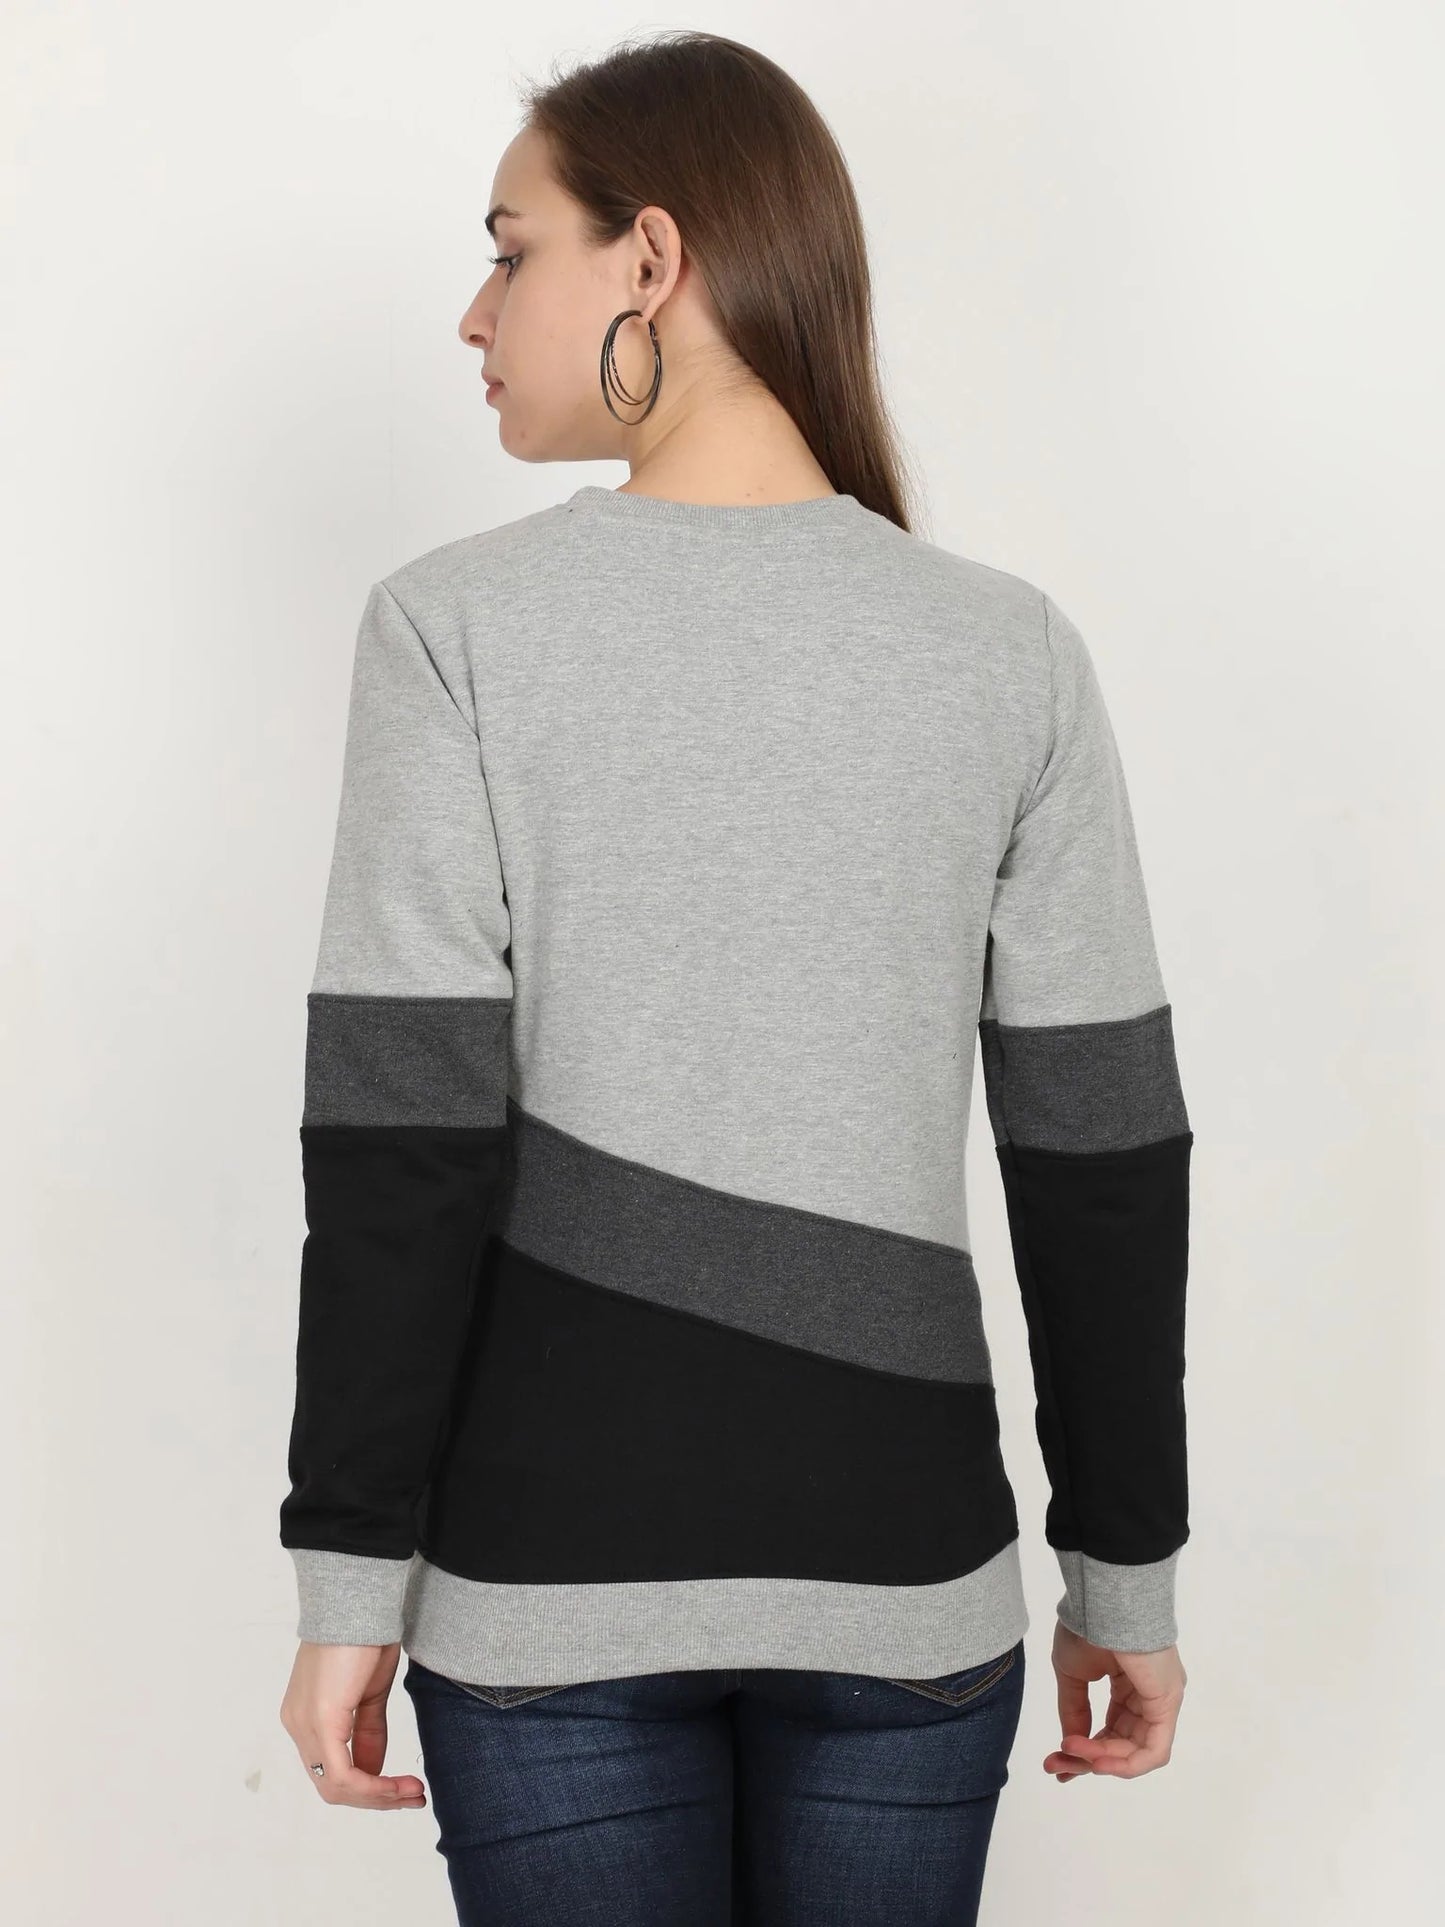 Fleximaa Women's Cotton Color Block Full Sleeve Sweatshirt - fleximaa-so